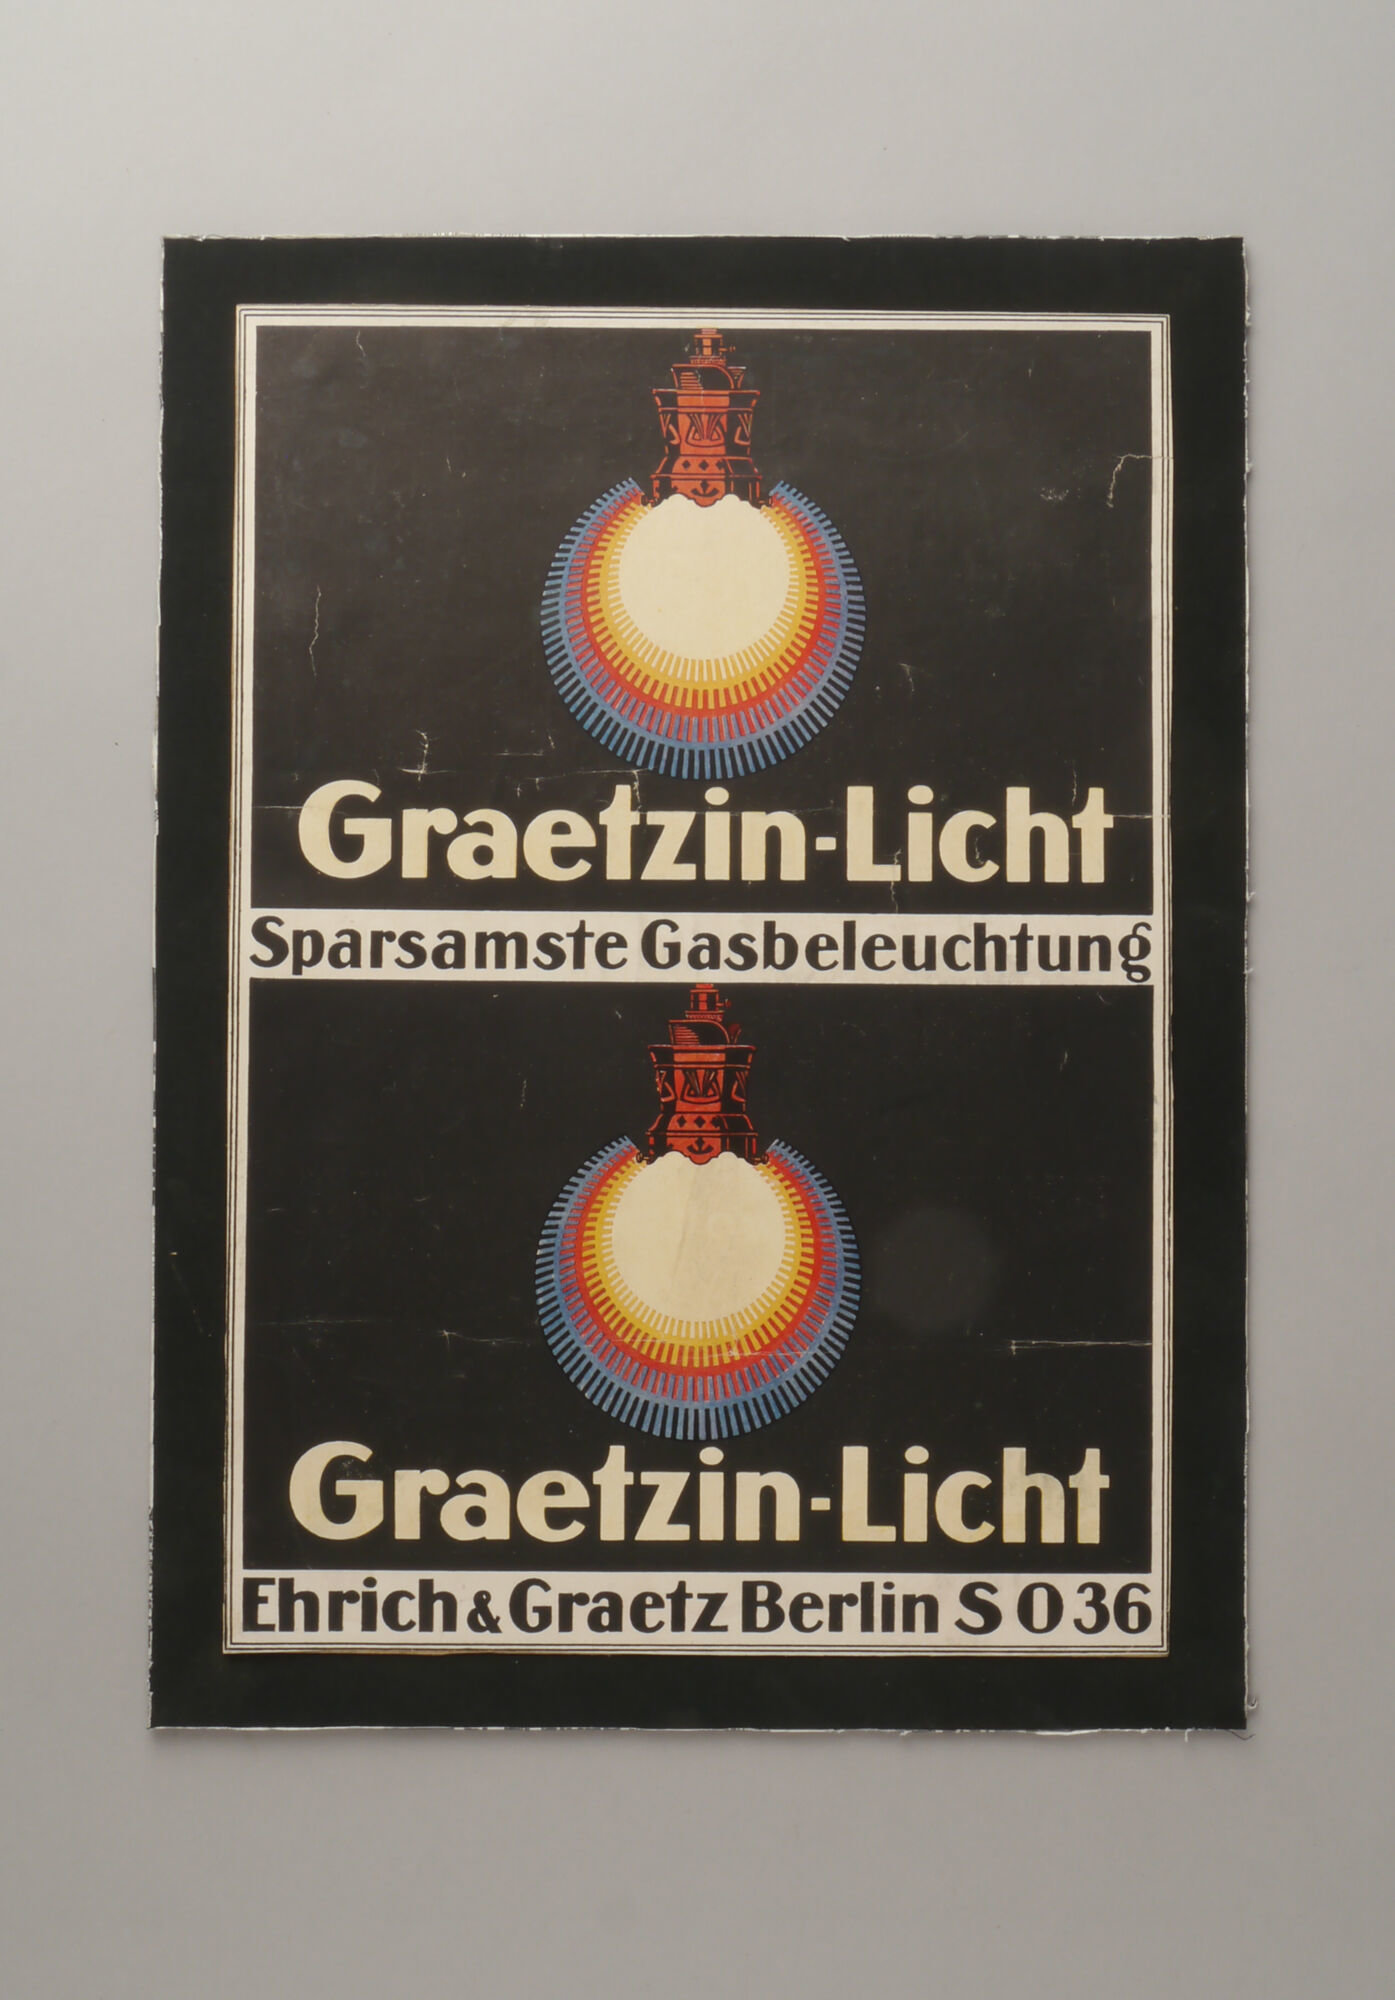 Reclameprent voor gasverlichting van het merk Graetzin